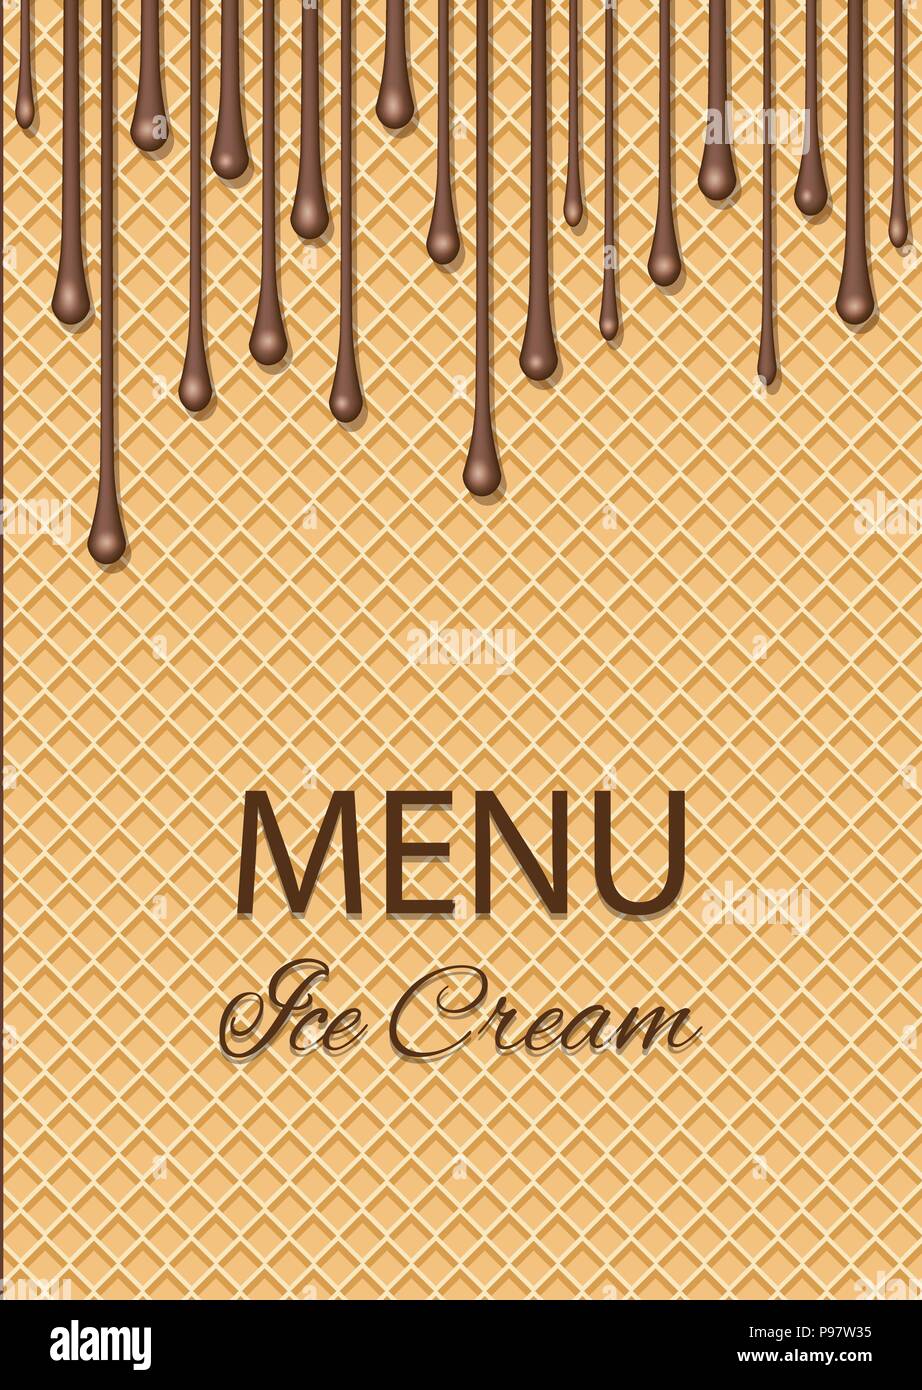 Cùng tìm hiểu về kem socola café ngon tuyệt đến từ nhà hàng của chúng tôi! Hương vị thơm ngon cùng vị kem mềm mượt sẽ làm bạn đắm chìm trong sự thỏa mãn tuyệt đối. Nhấp chuột để xem một hình ảnh đầy cuốn hút của món kem ưa thích này!